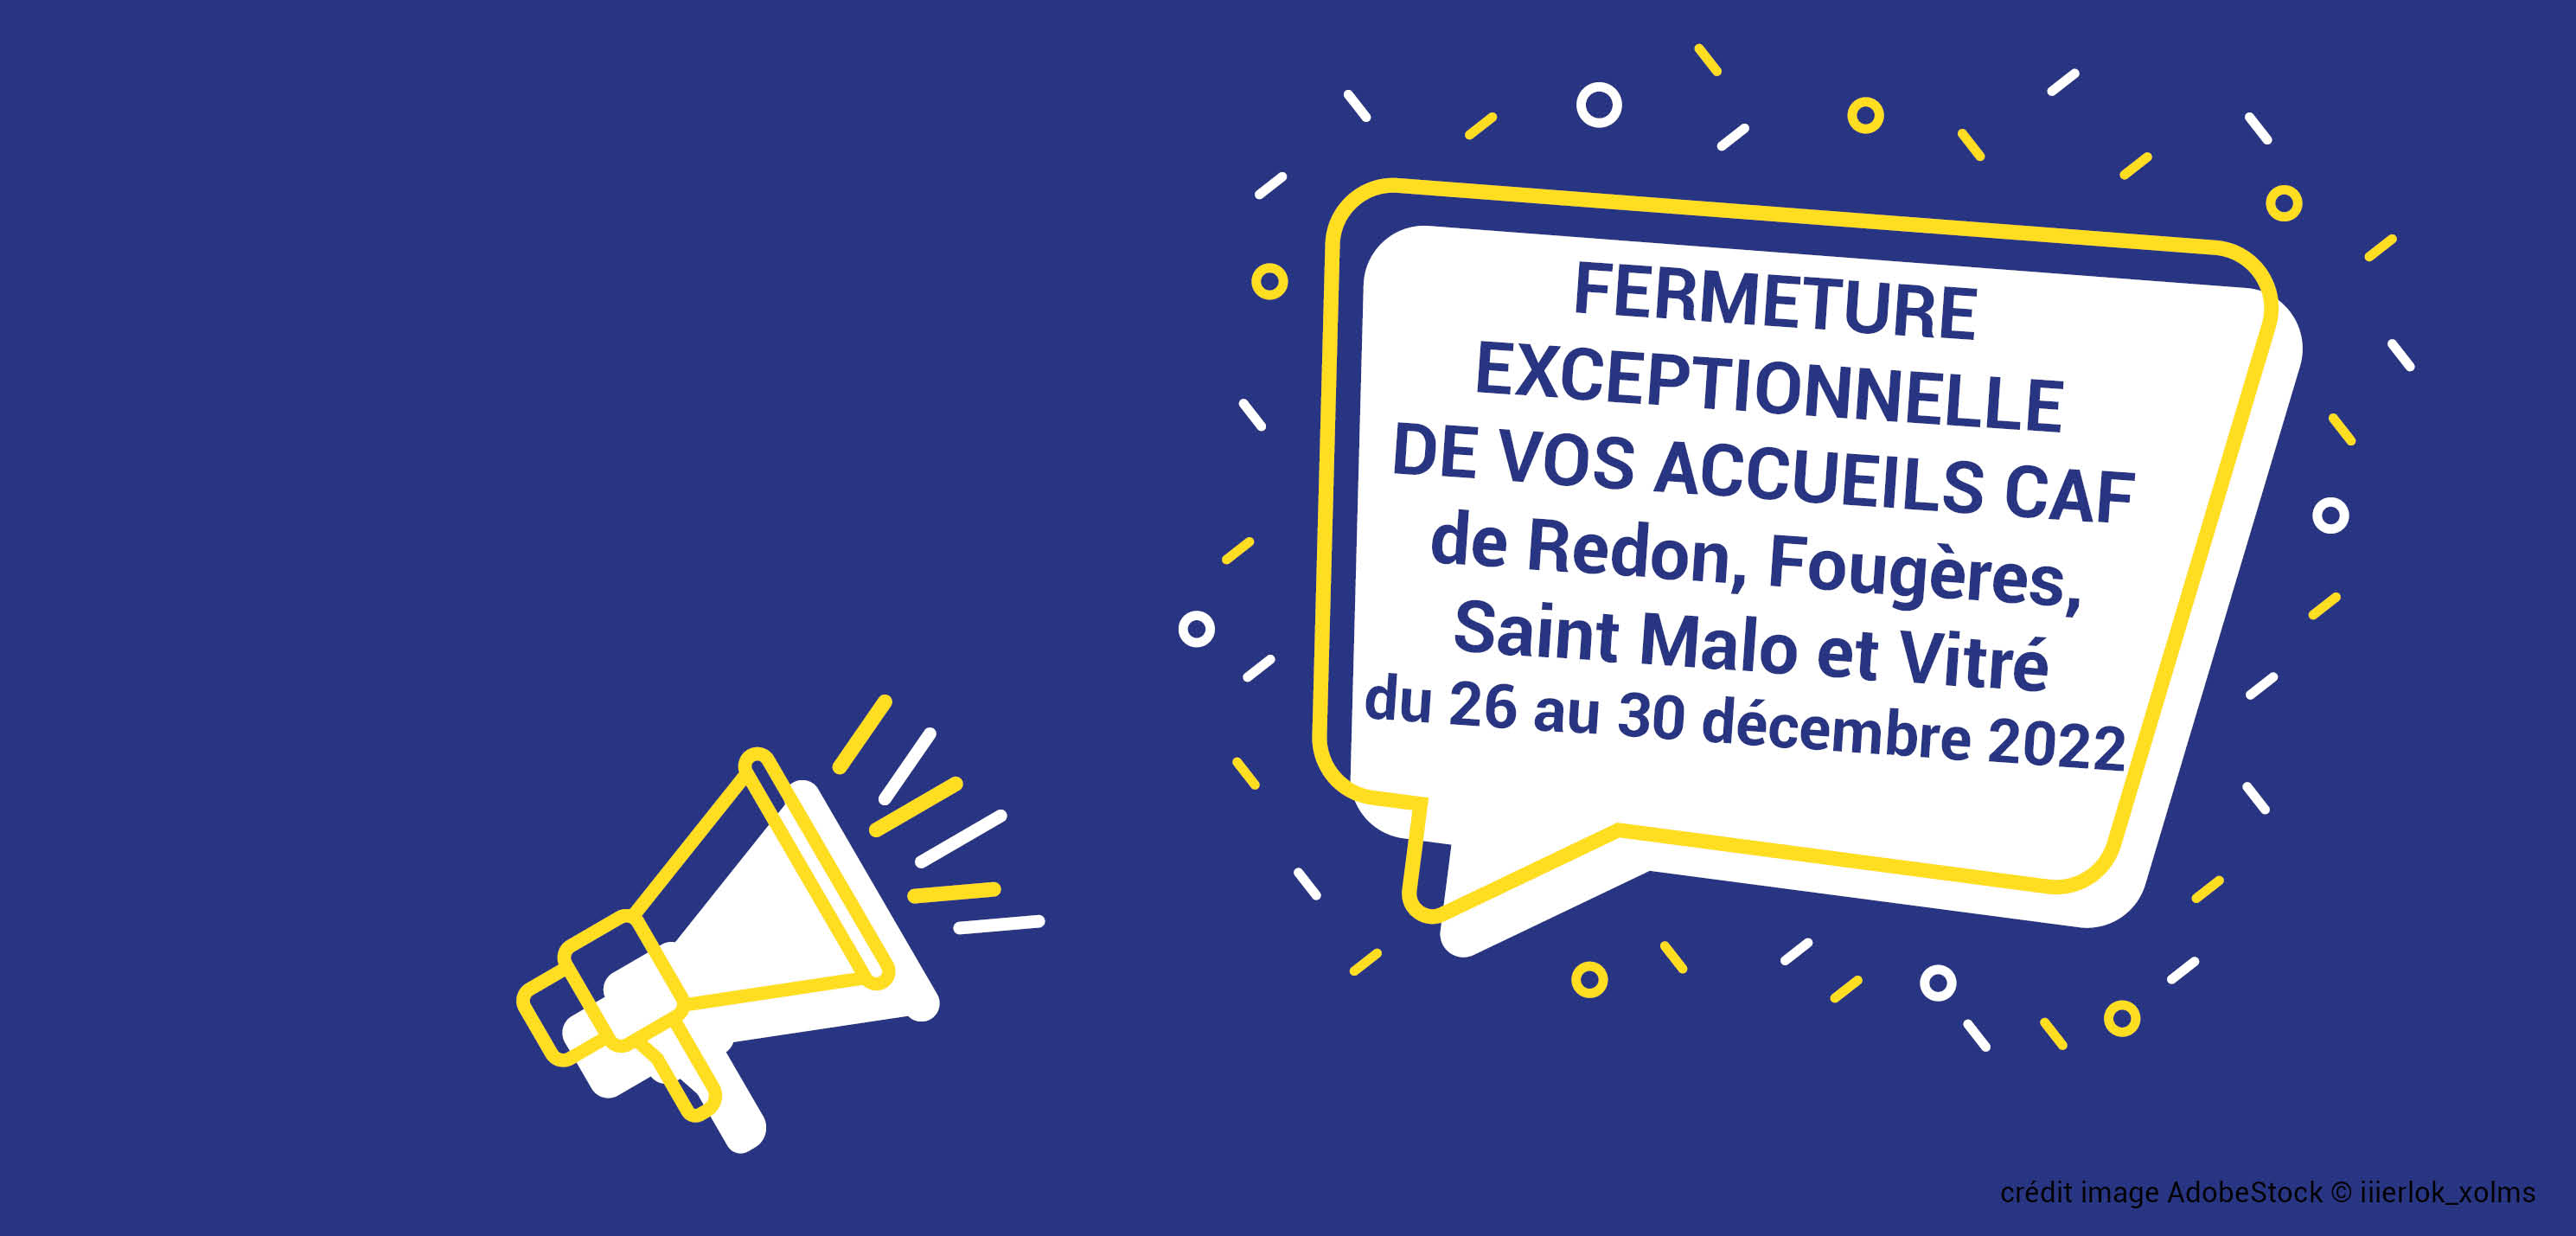 Vos accueils Caf de Redon, Fougères, Vitré et Saint Malo seront fermés du 26 au 30 décembre 2022.